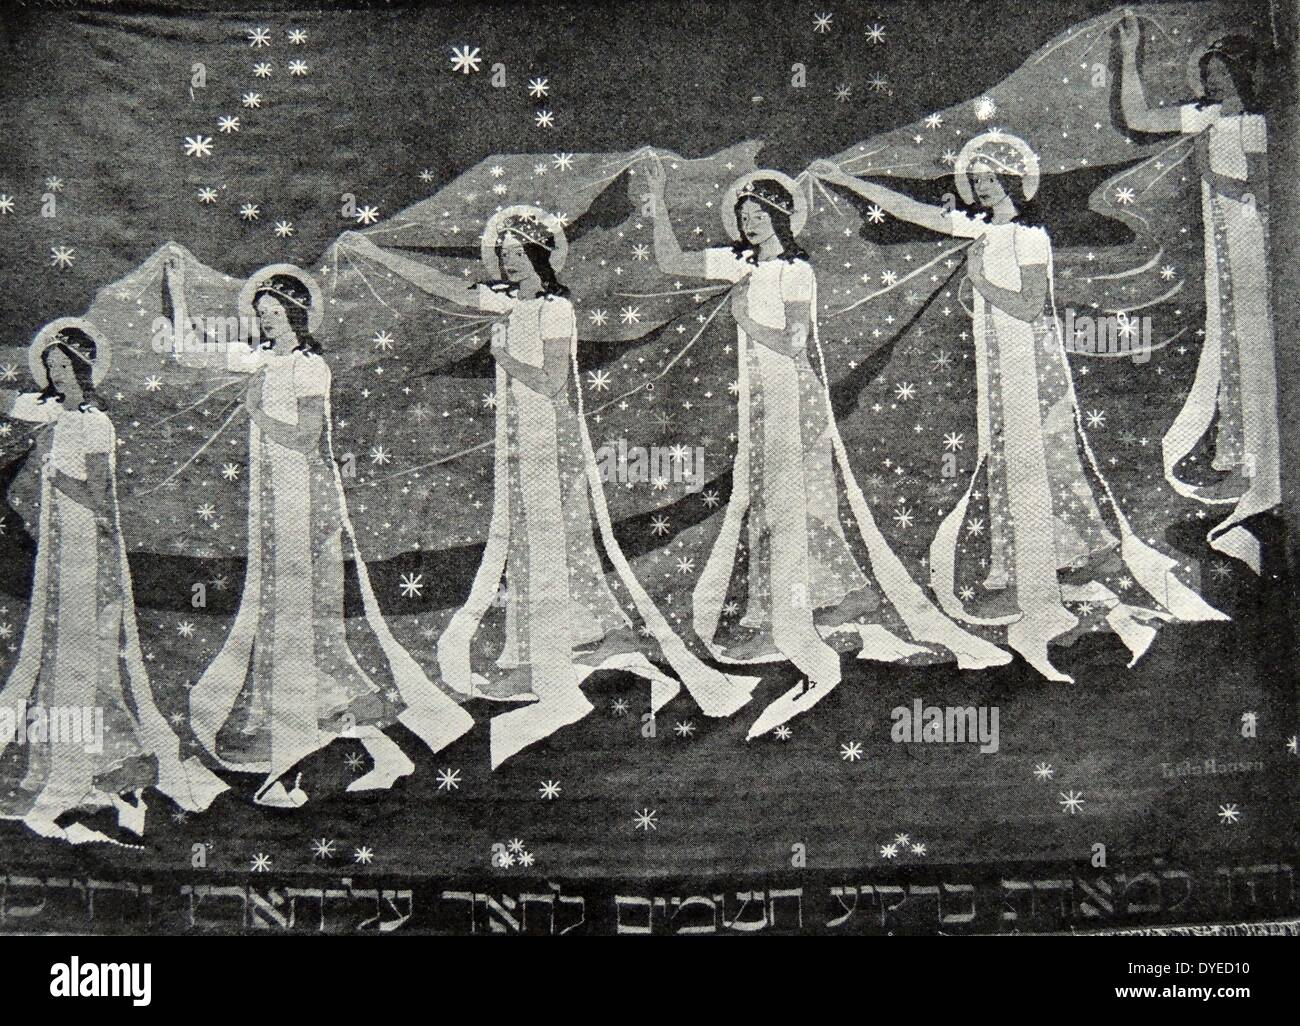 Voie lactée - une tapisserie norvégien créé dans un style Art Nouveau- par Frida Hansen (1855 - 1931). Datée 1900 Banque D'Images